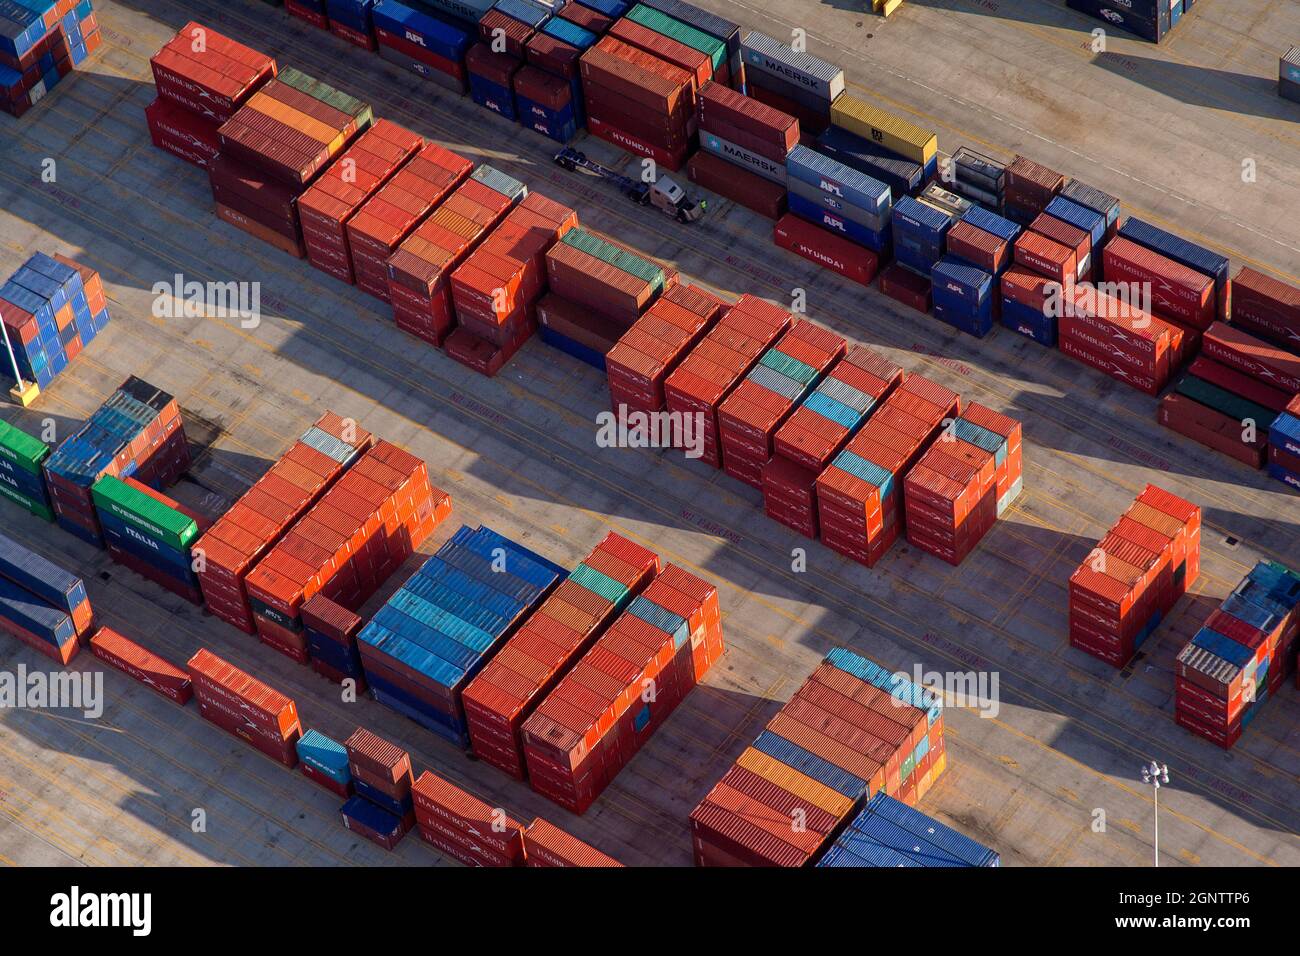 Luftaufnahme des intermodalen Frachtcontainers und Frachtbetriebs am Charleston Ports Wando Welch Terminal in Mt Pleasant, South Carolina. Stockfoto